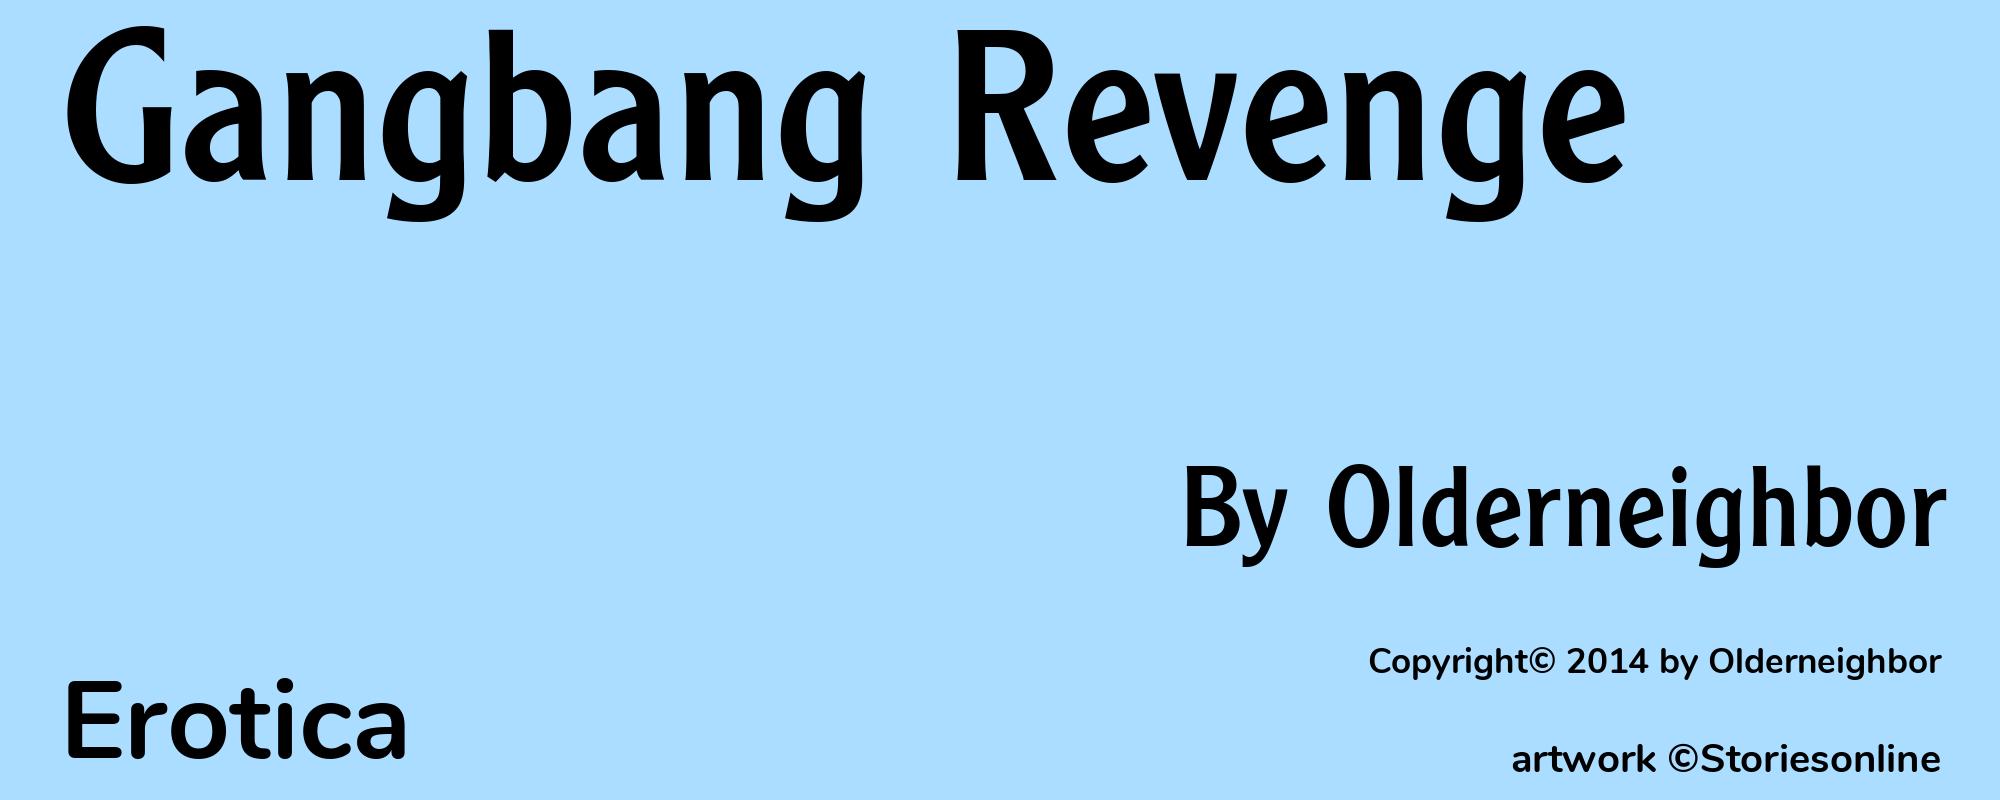 Gangbang Revenge - Cover